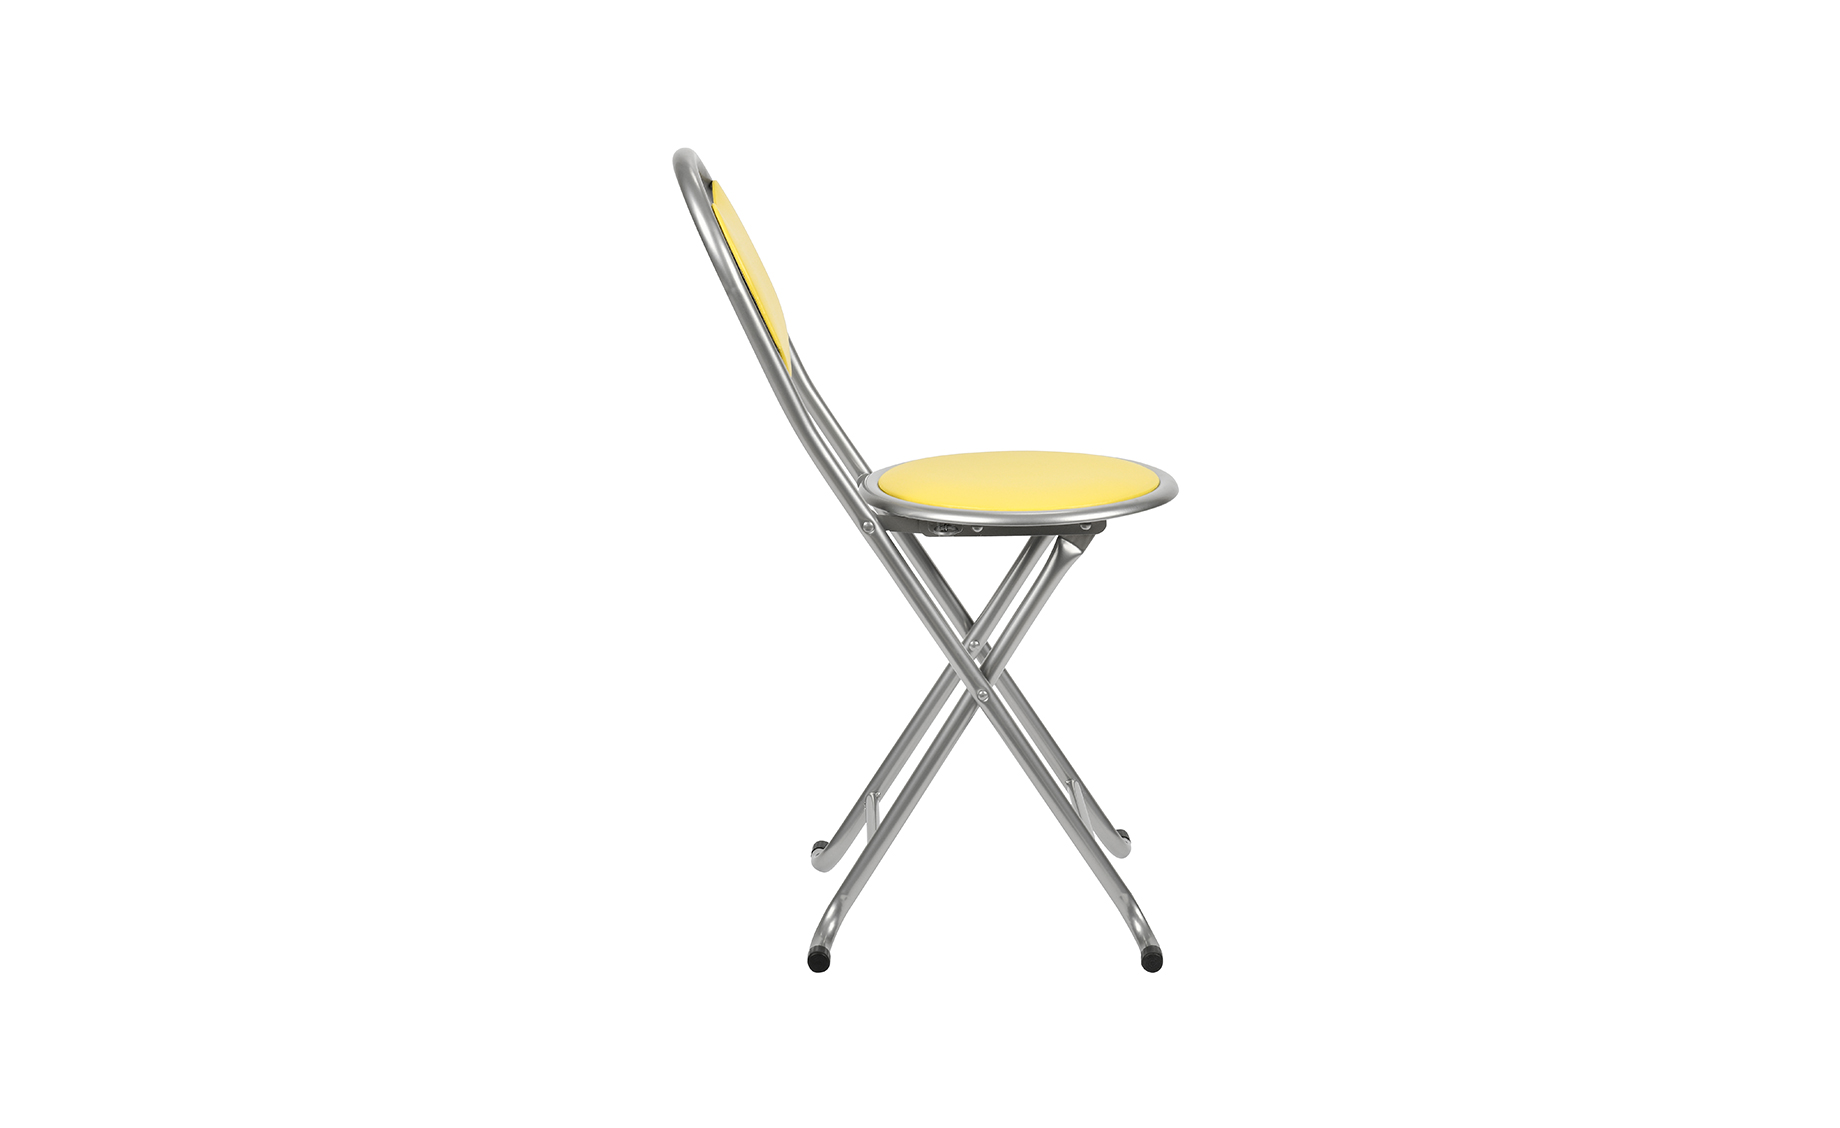 Folky preklopni stolac s naslonom 30x30x72cm žuti